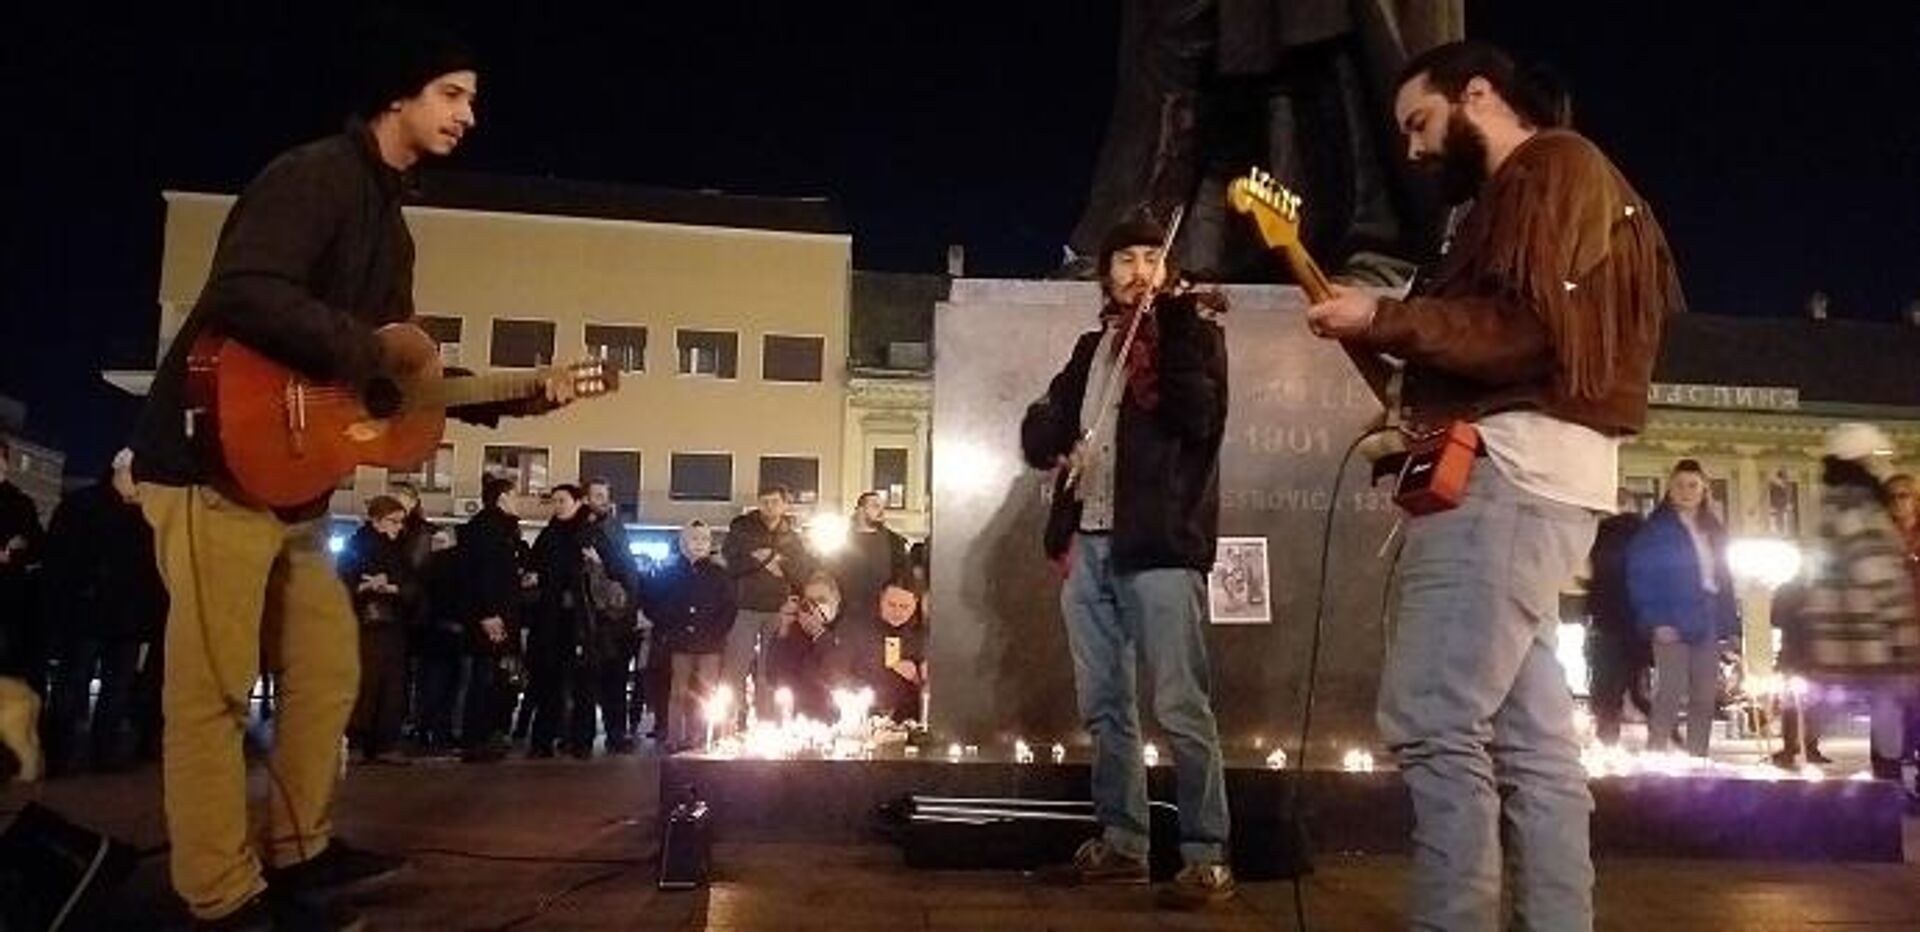 Novosadski muzičari svirali su omiljene Blekijeve pesme na centralnom gradskom trgu - Sputnik Srbija, 1920, 12.02.2022